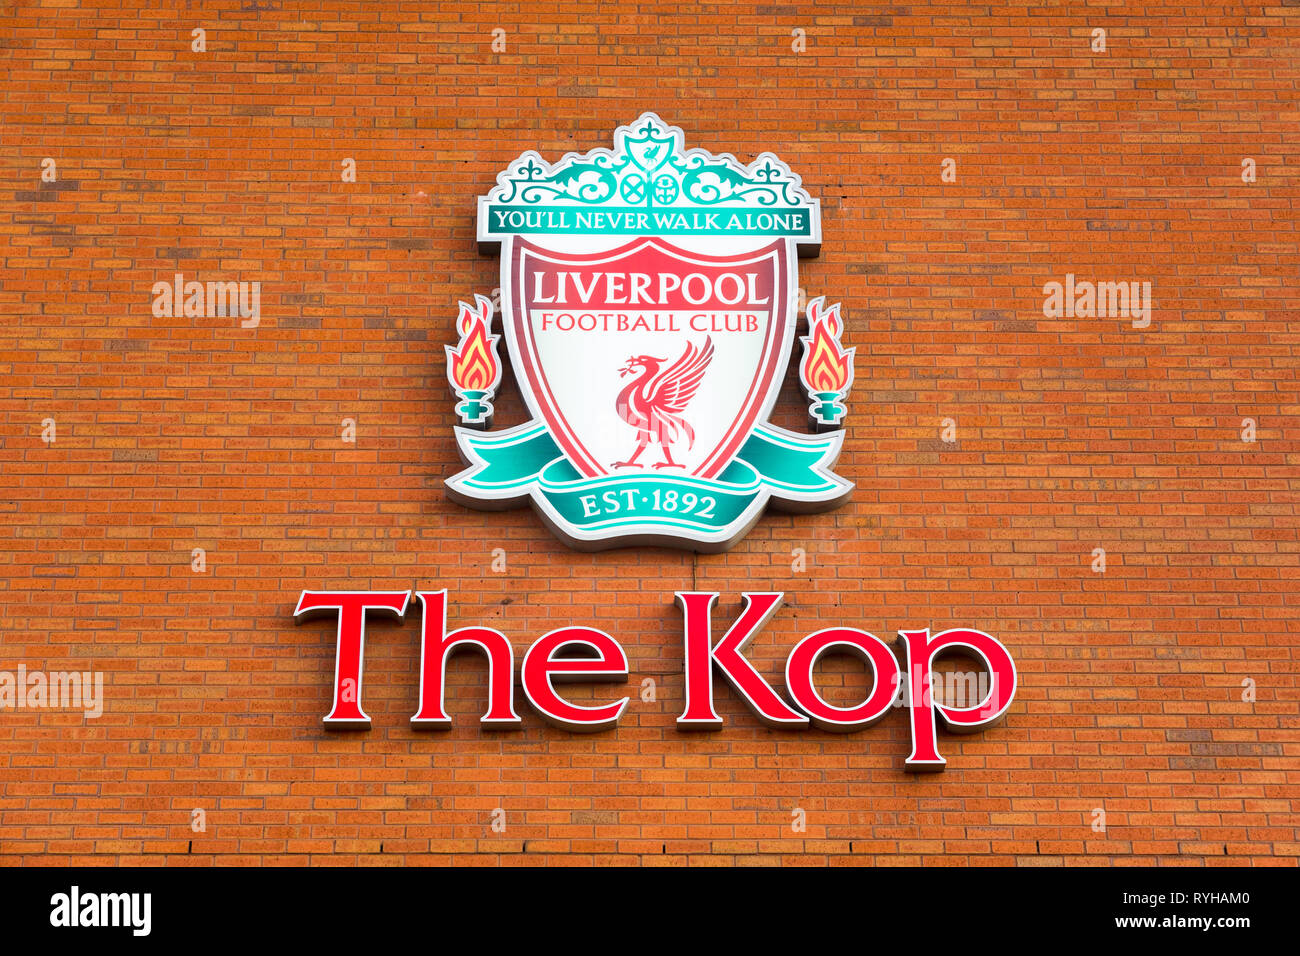 Grande rosso verde Liverpool Football Club Kop logo emblema distintivo segno montato su esterno muro di mattoni di Anfield Road Stadium rivolta Walton Breck Road Foto Stock